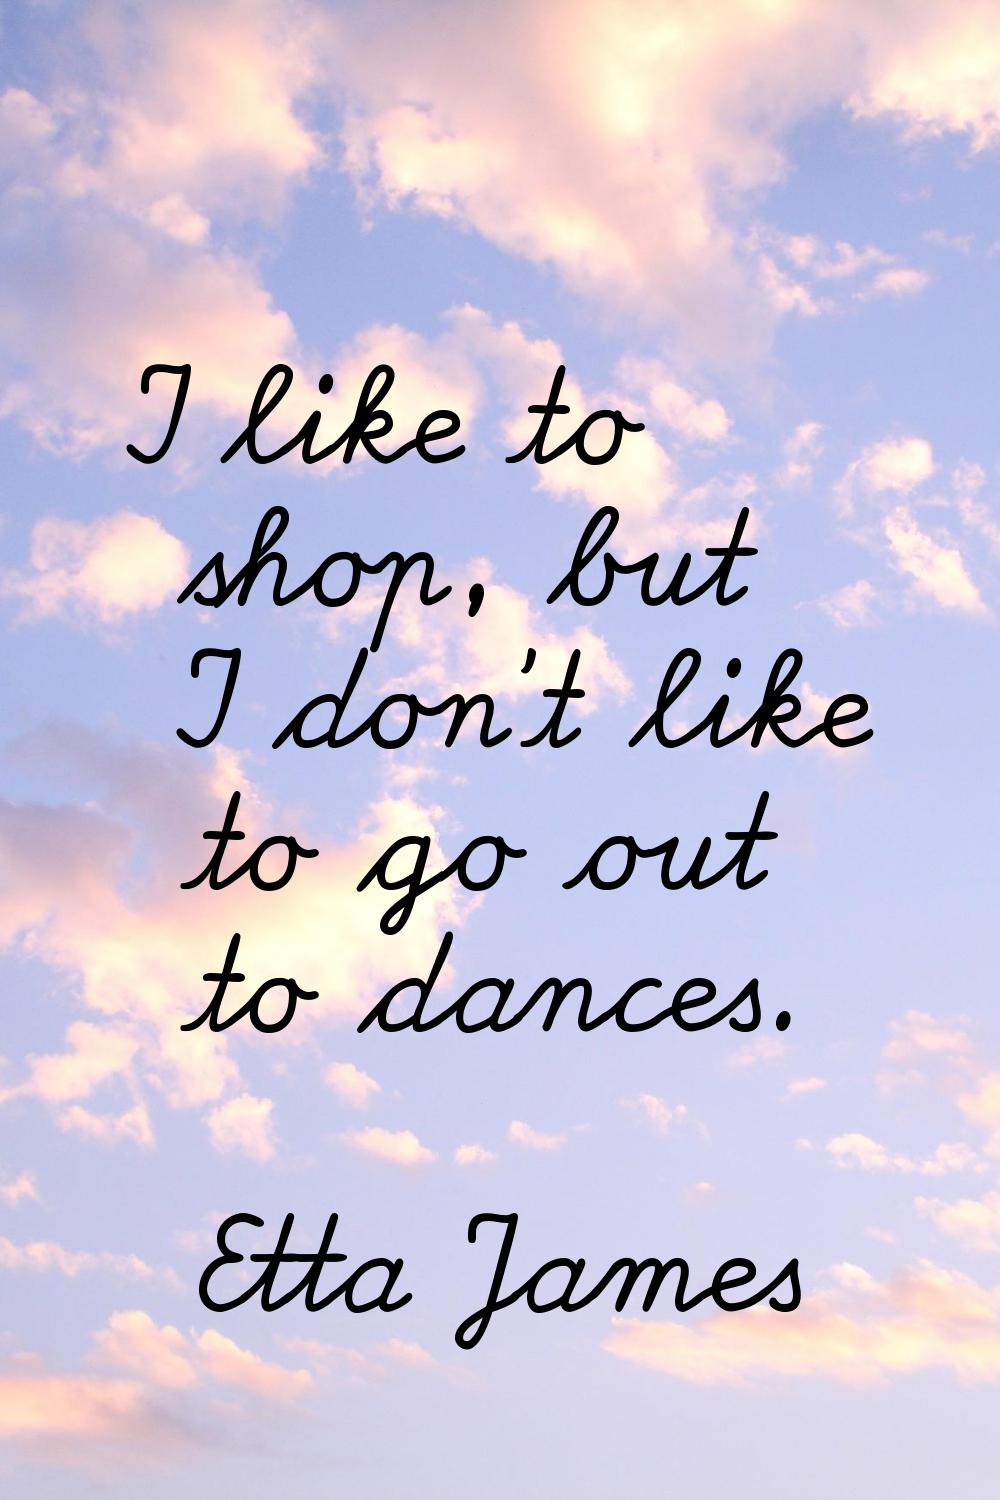 I like to shop, but I don't like to go out to dances.